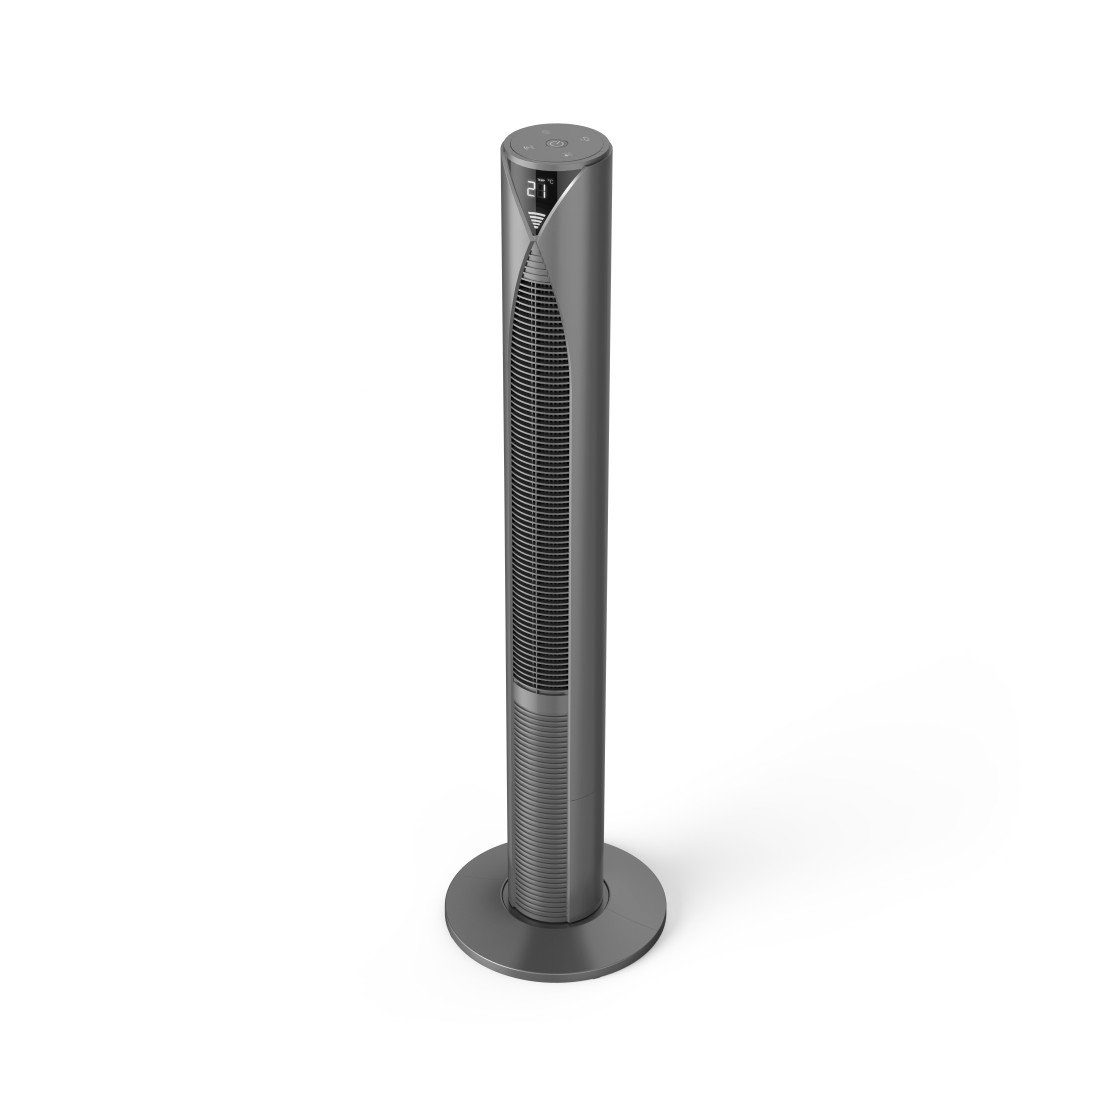 Hama Standventilator Smarter Standventilator mit Geschwindigkeitsstufen, energiesparend Timer, Modus Turm, mit Displayanzeige, Fernbedienung Standby 117cm, 3